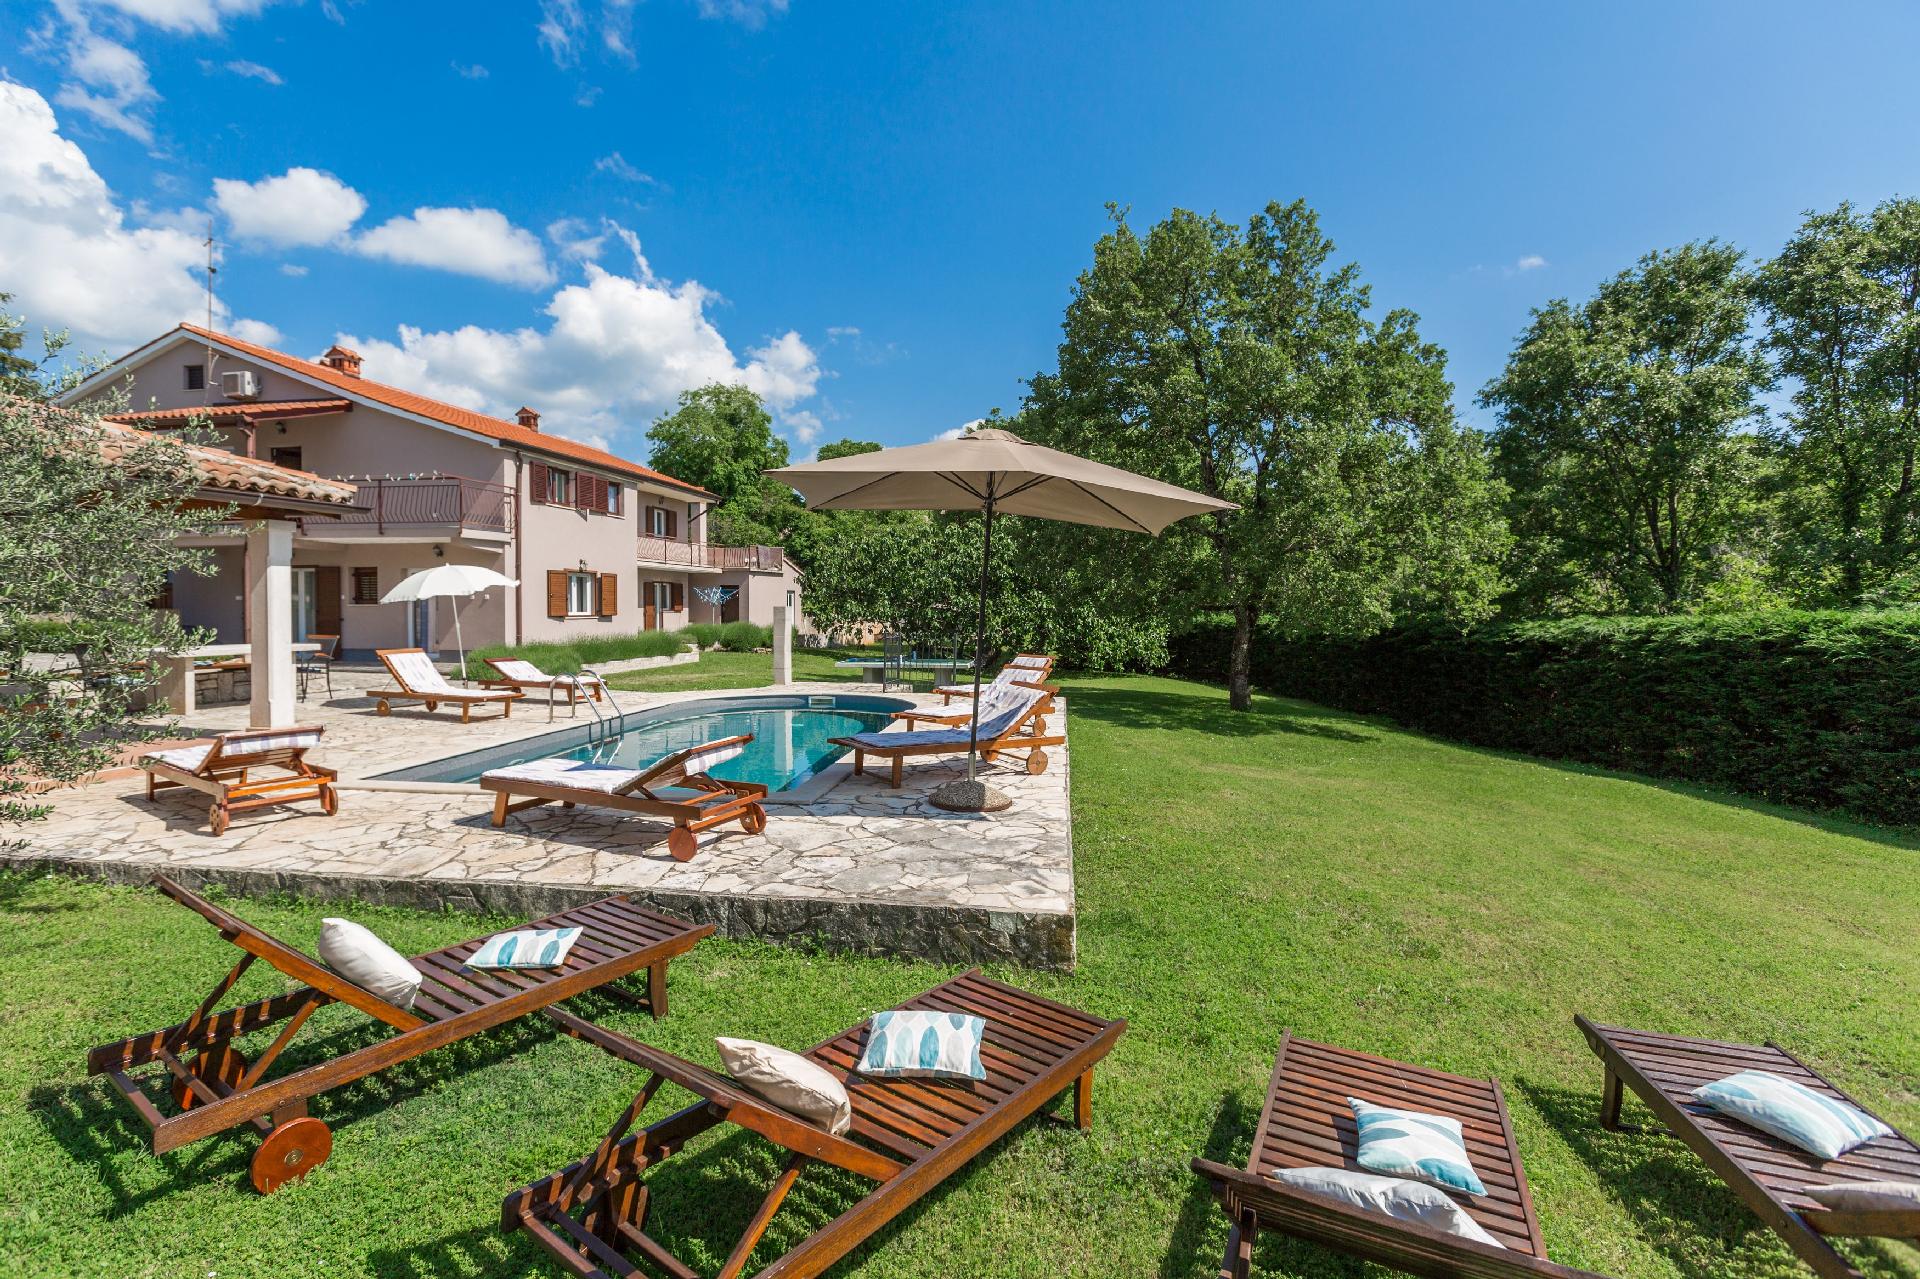 Villa Morena mit Pool, bis 12 Personen, Garten, um Ferienhaus in Kroatien